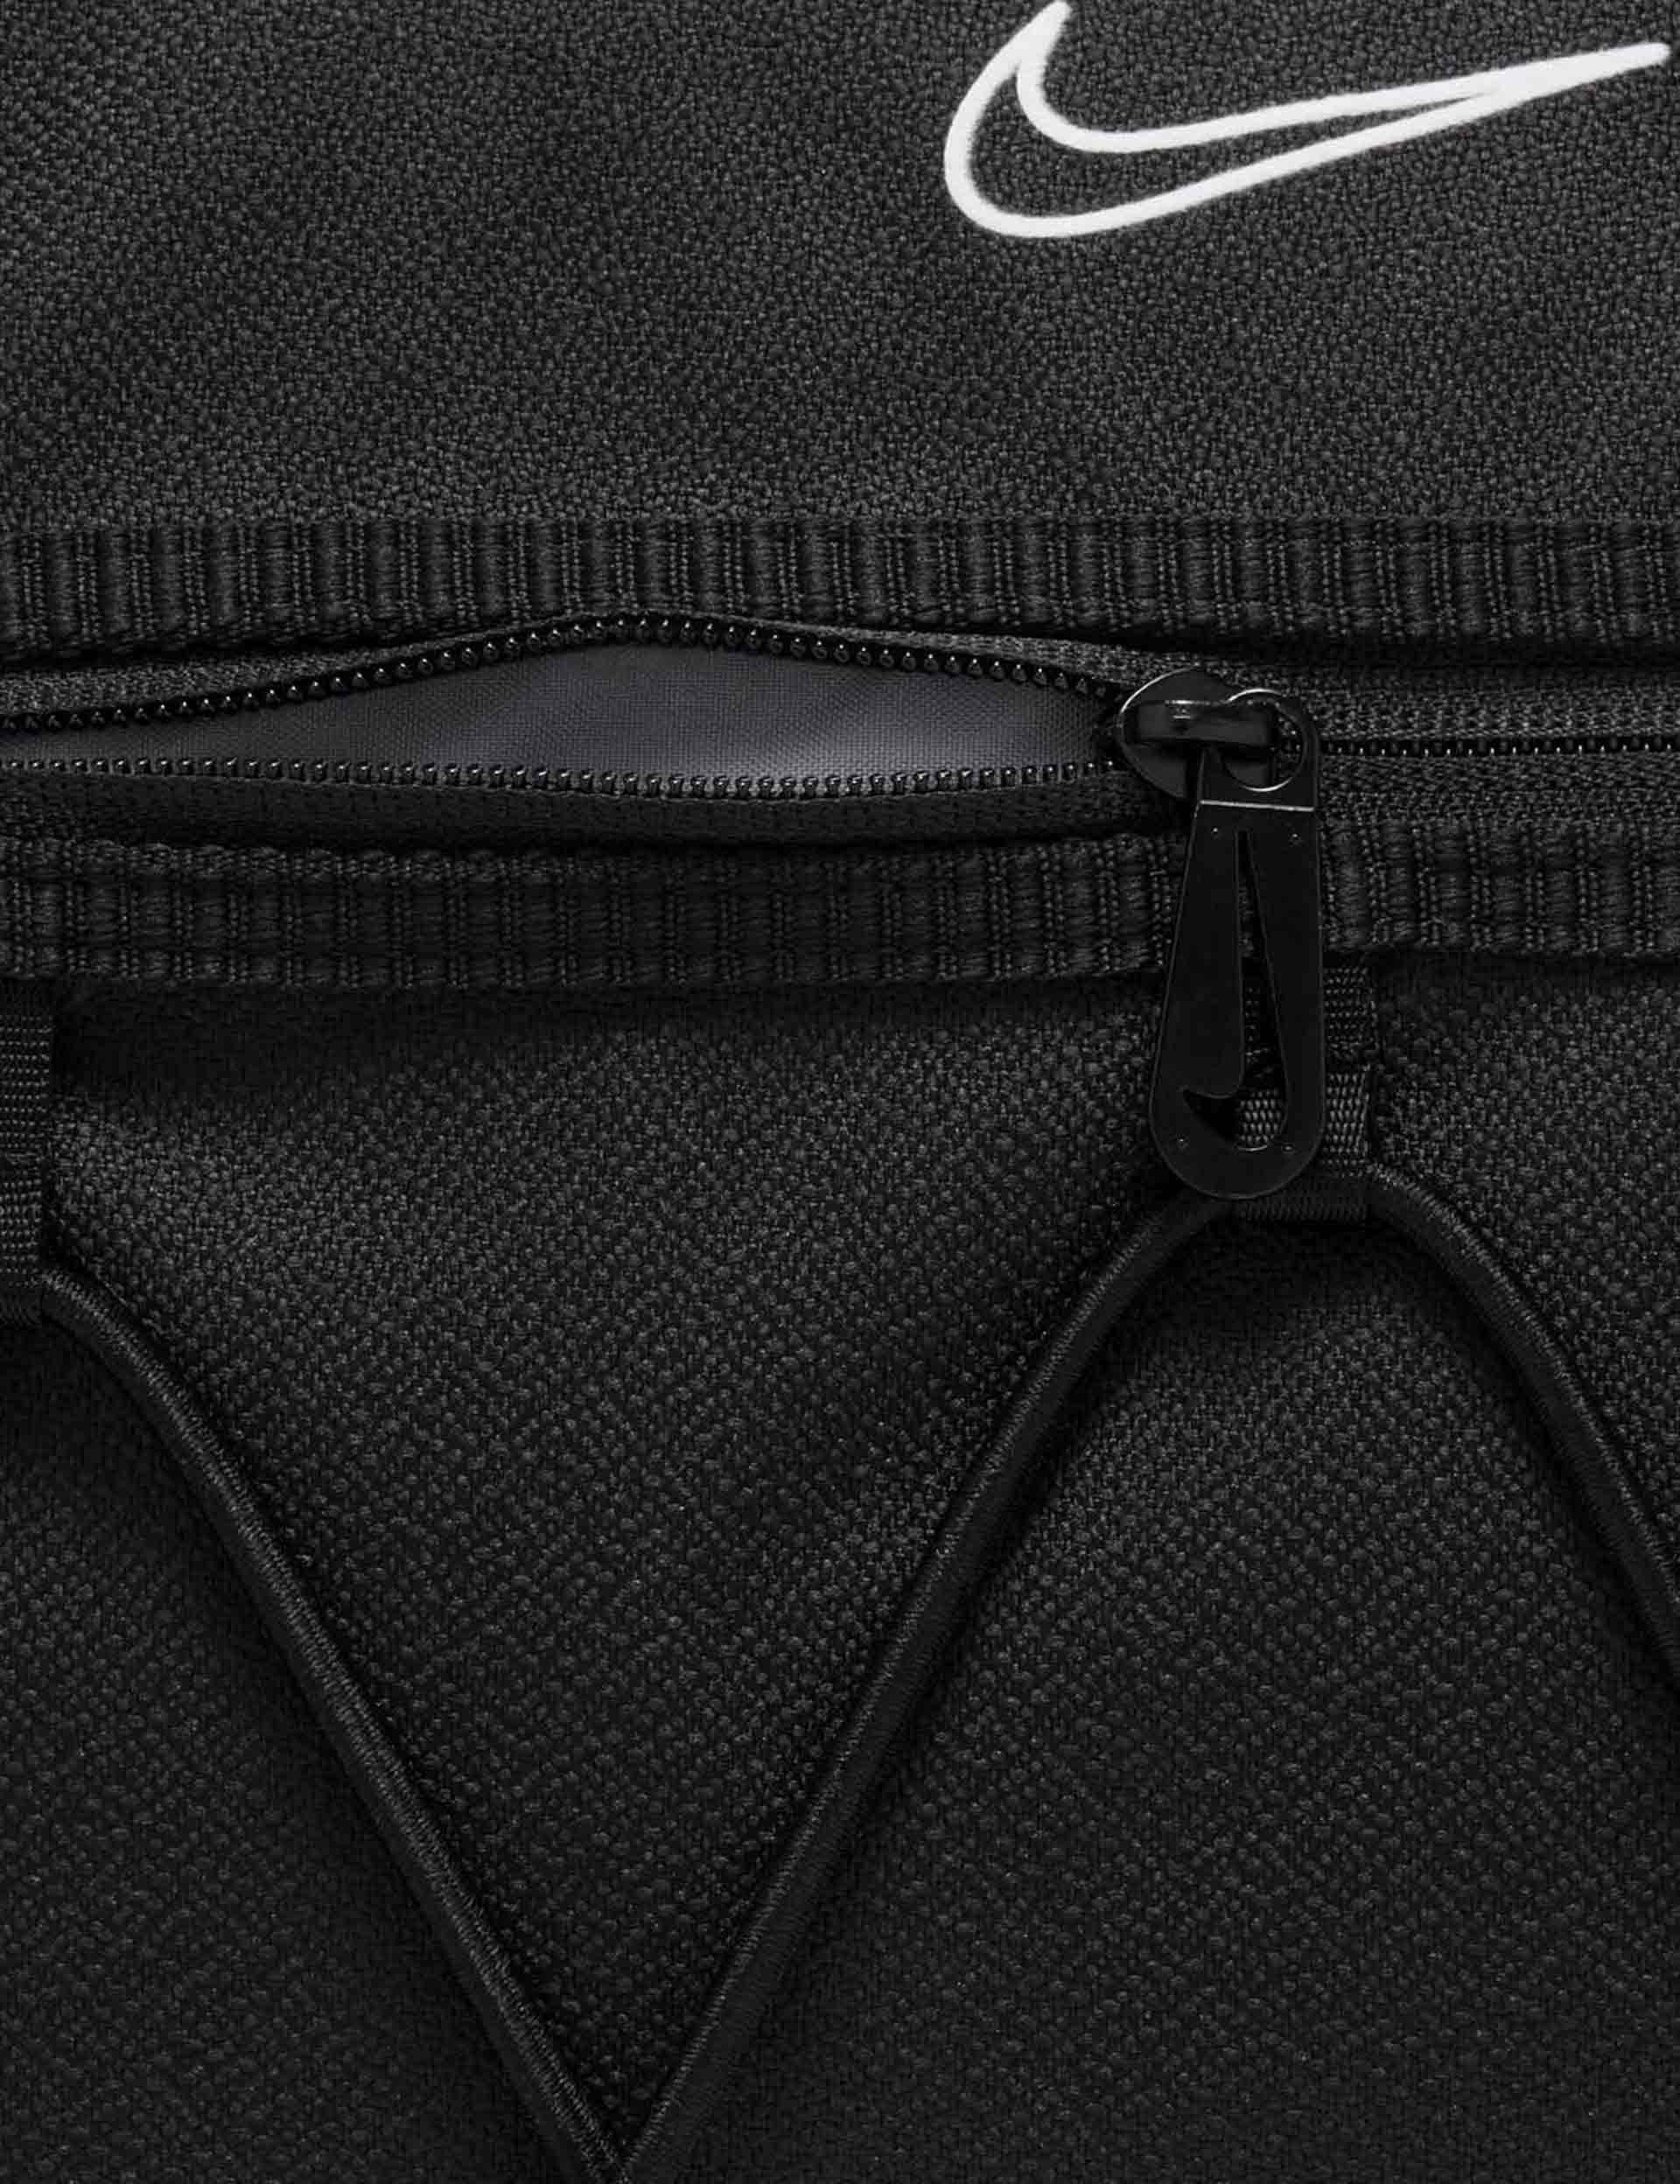 Nike | One Club Duffel Bag - Black/White | The Sports Edit